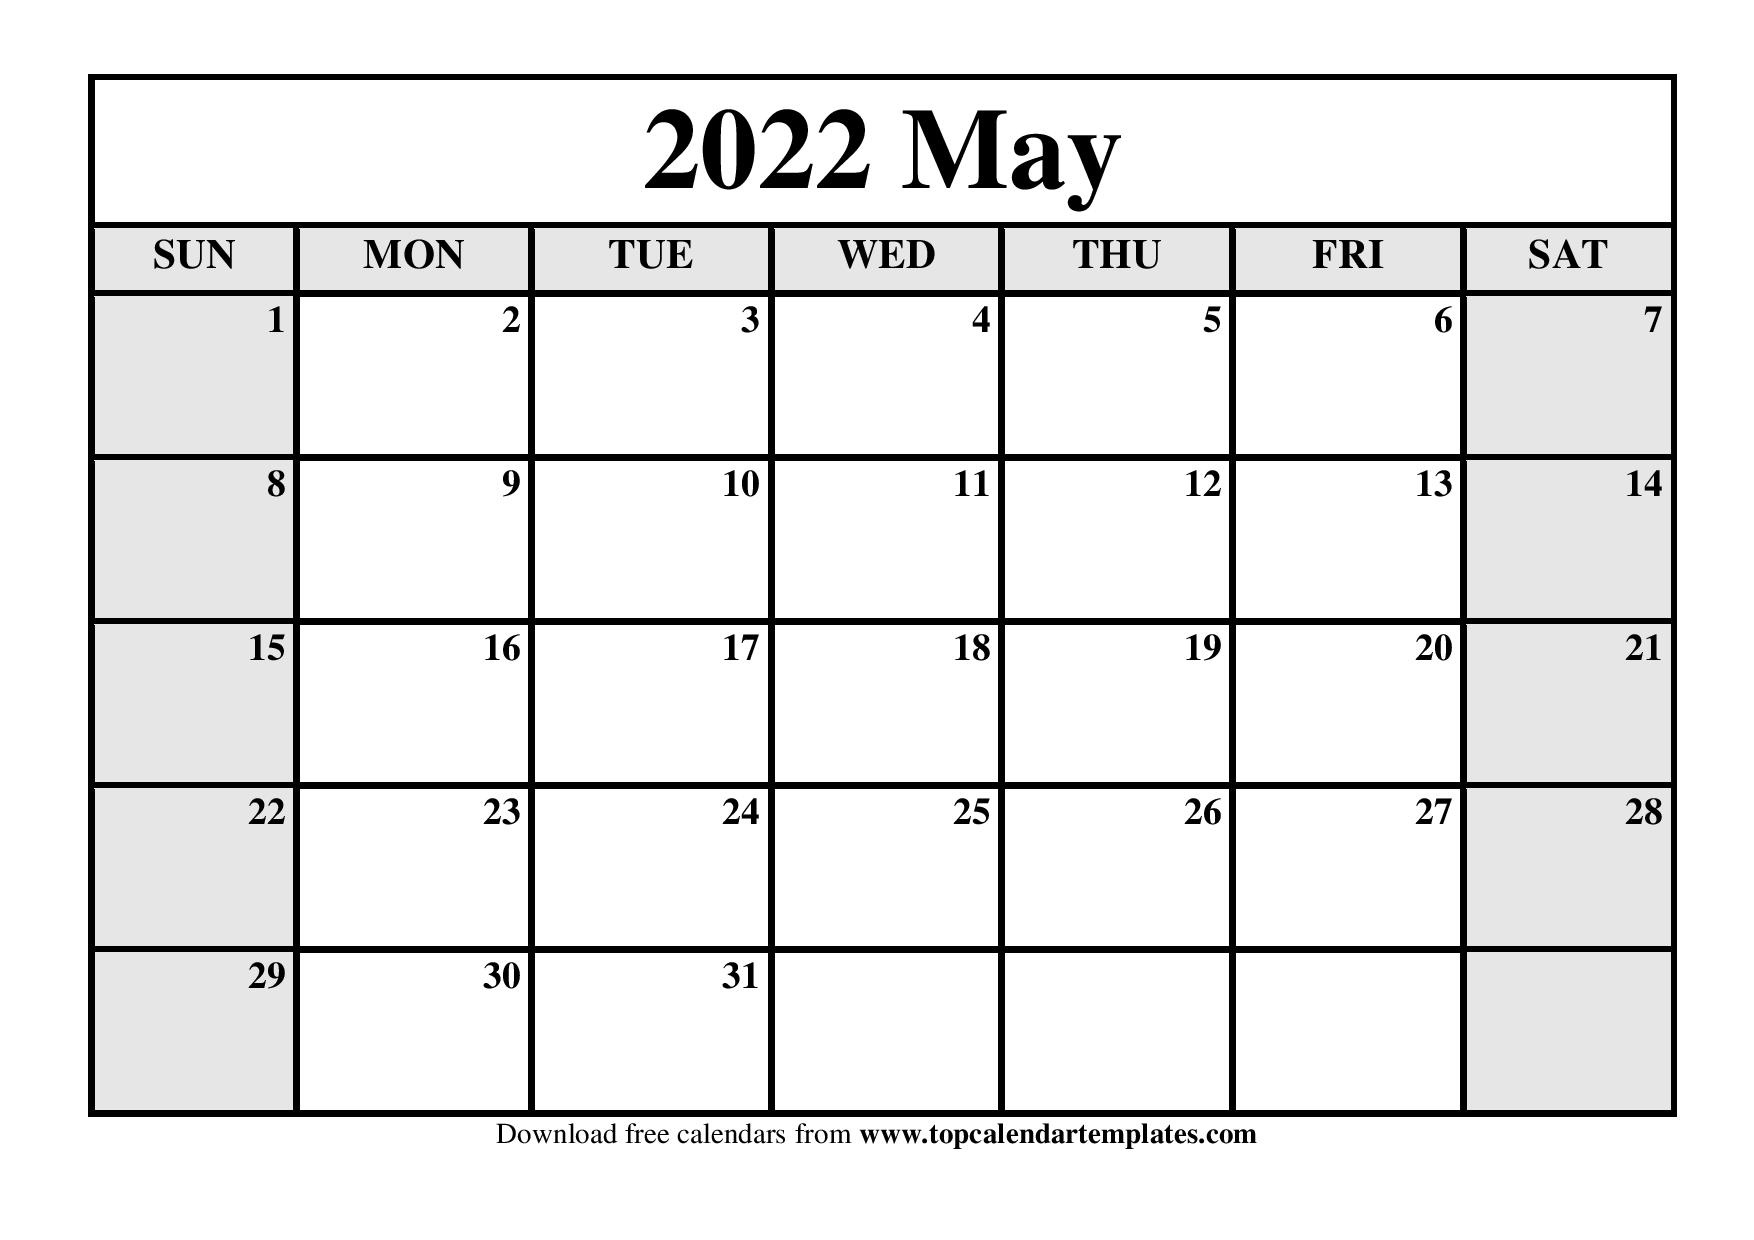 Muny 2022 Schedule 2022 Muny Schedule - Festival Schedule 2022